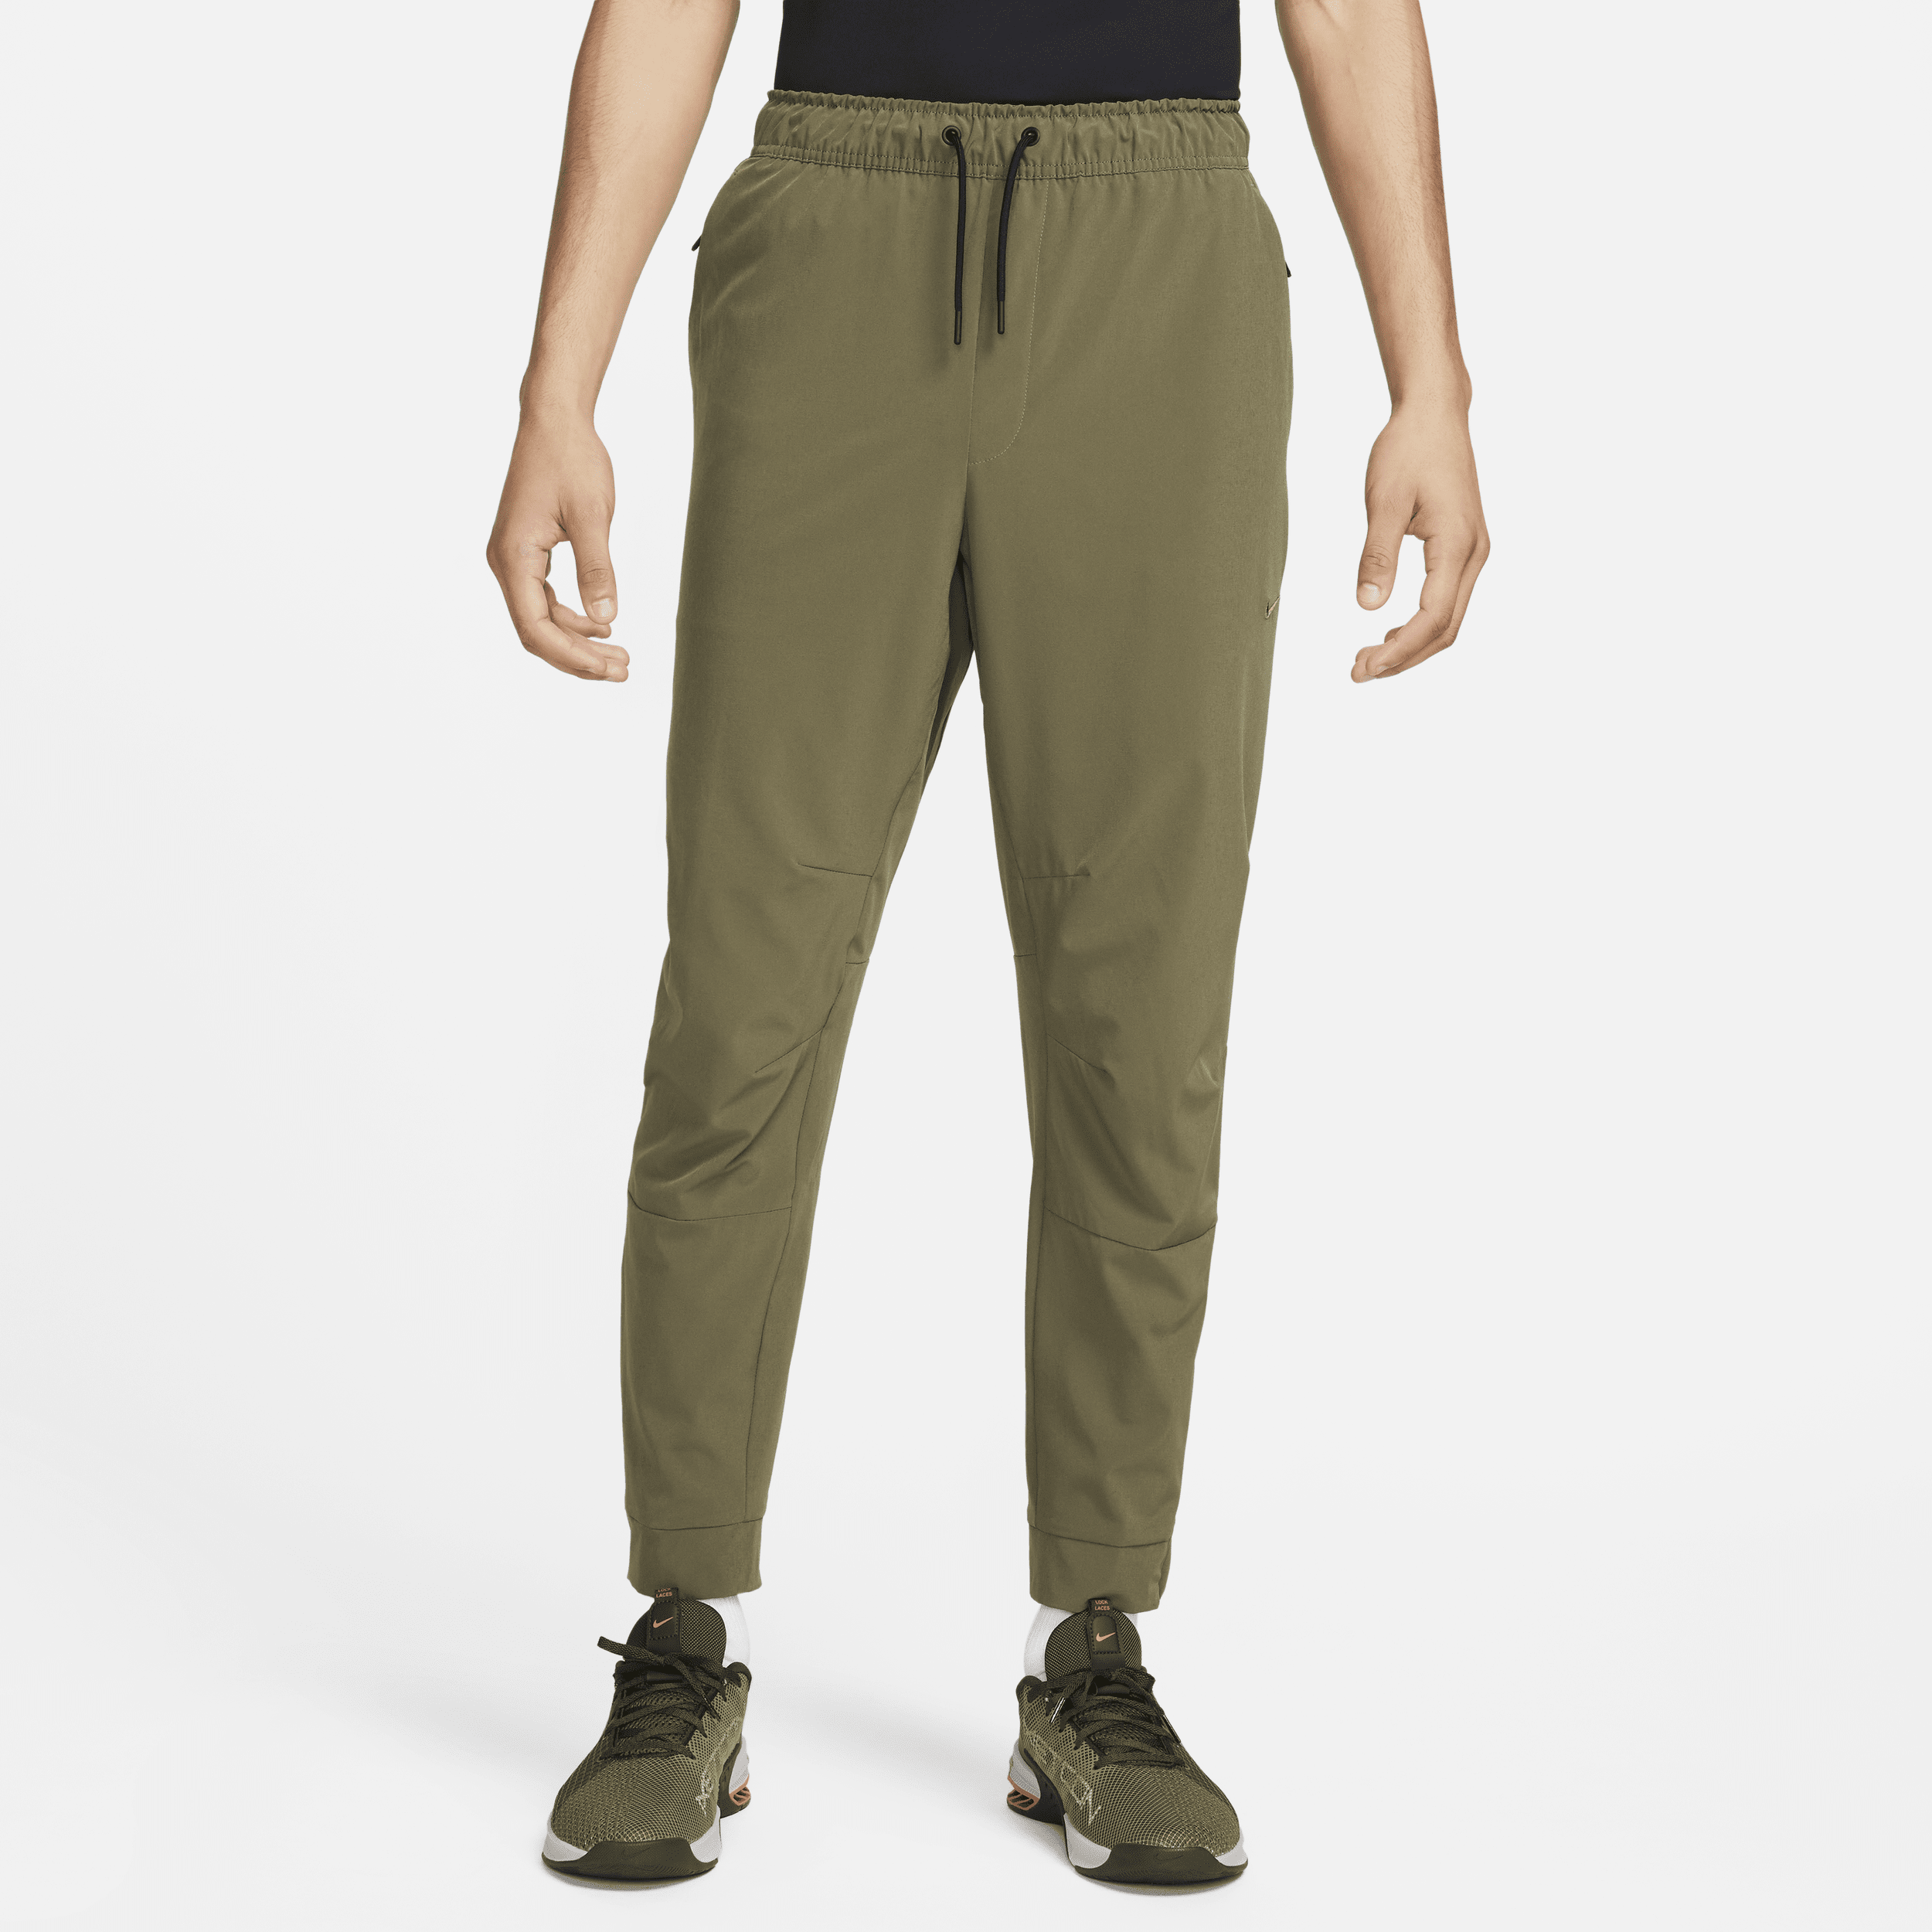 Pantaloni versatili con zip sul bordo Dri-FIT Nike Unlimited – Uomo - Verde